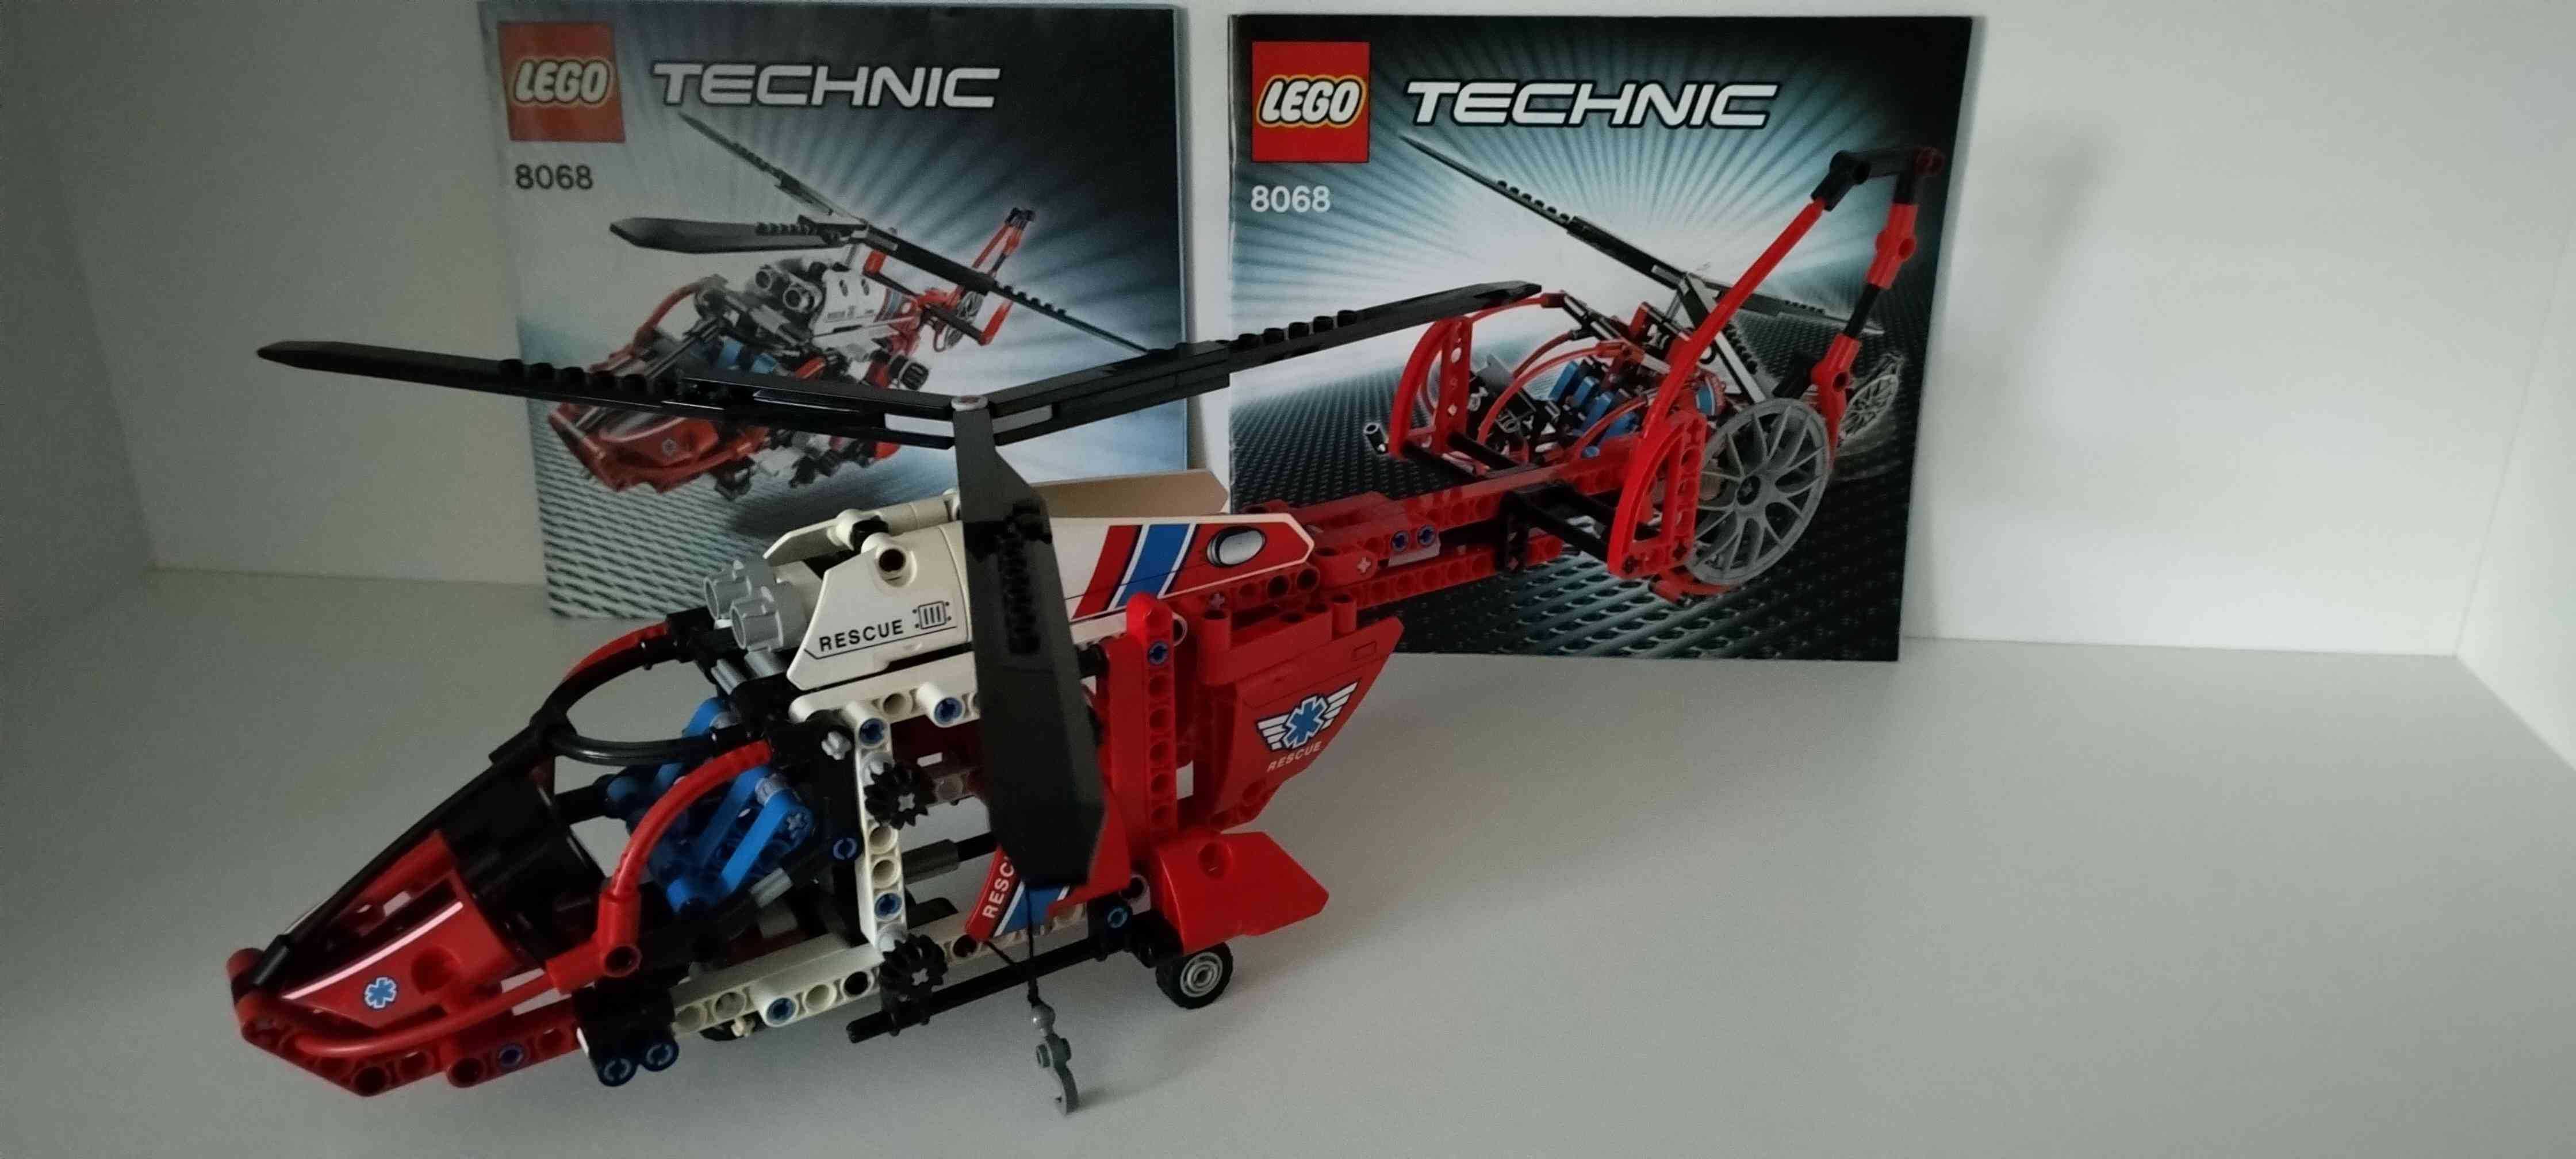 Lego Technic 8068 com oferta de portes em correio registado.